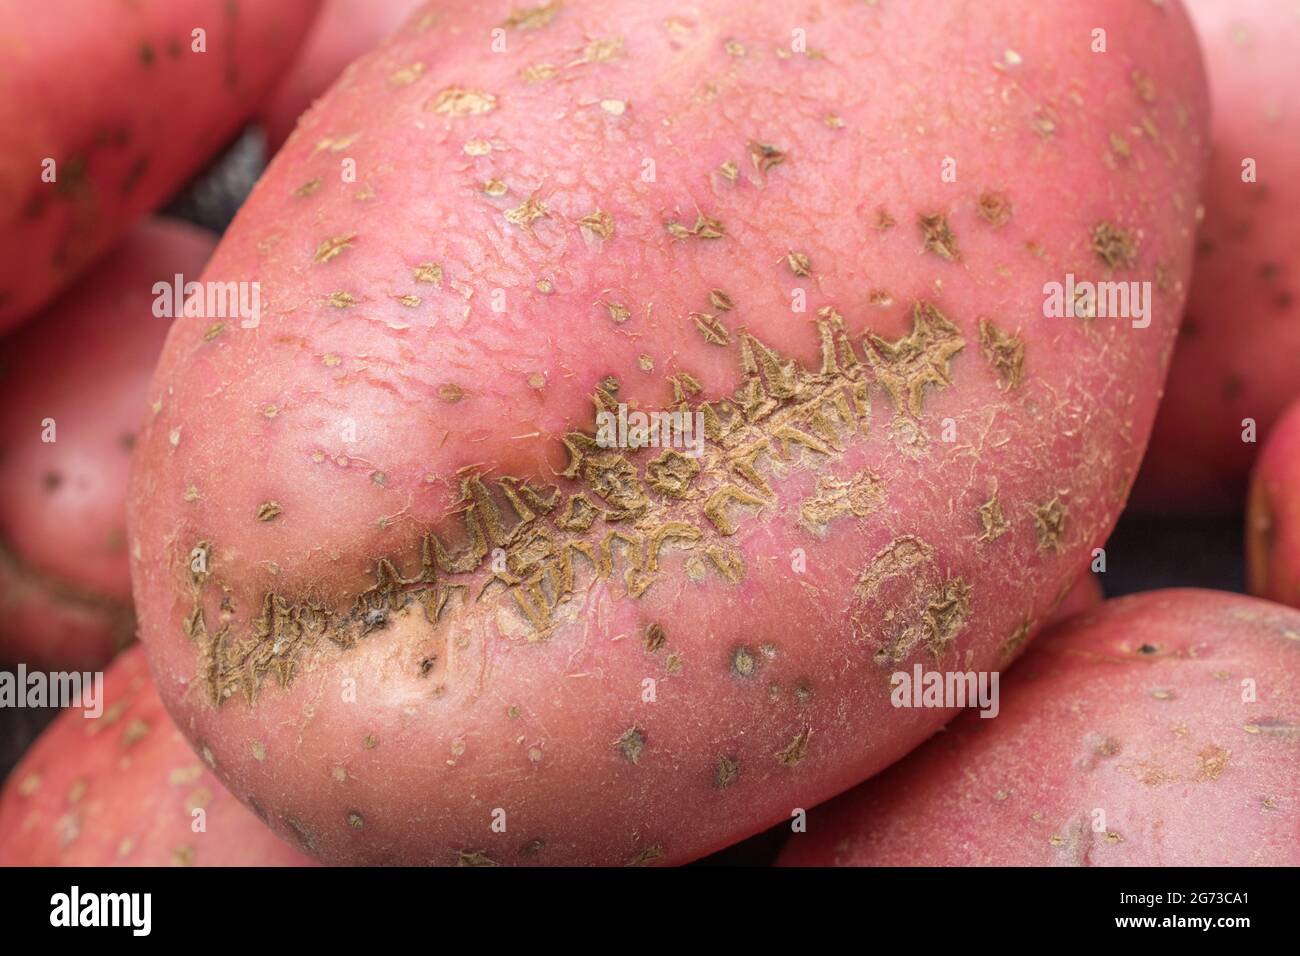 Pomme de terre rouge / rousse cultivée au Royaume-Uni. Les pommes de terre ont une maladie présente [qui peut être la gale commune, ou peut-être la gale poudreuse]. Banque D'Images